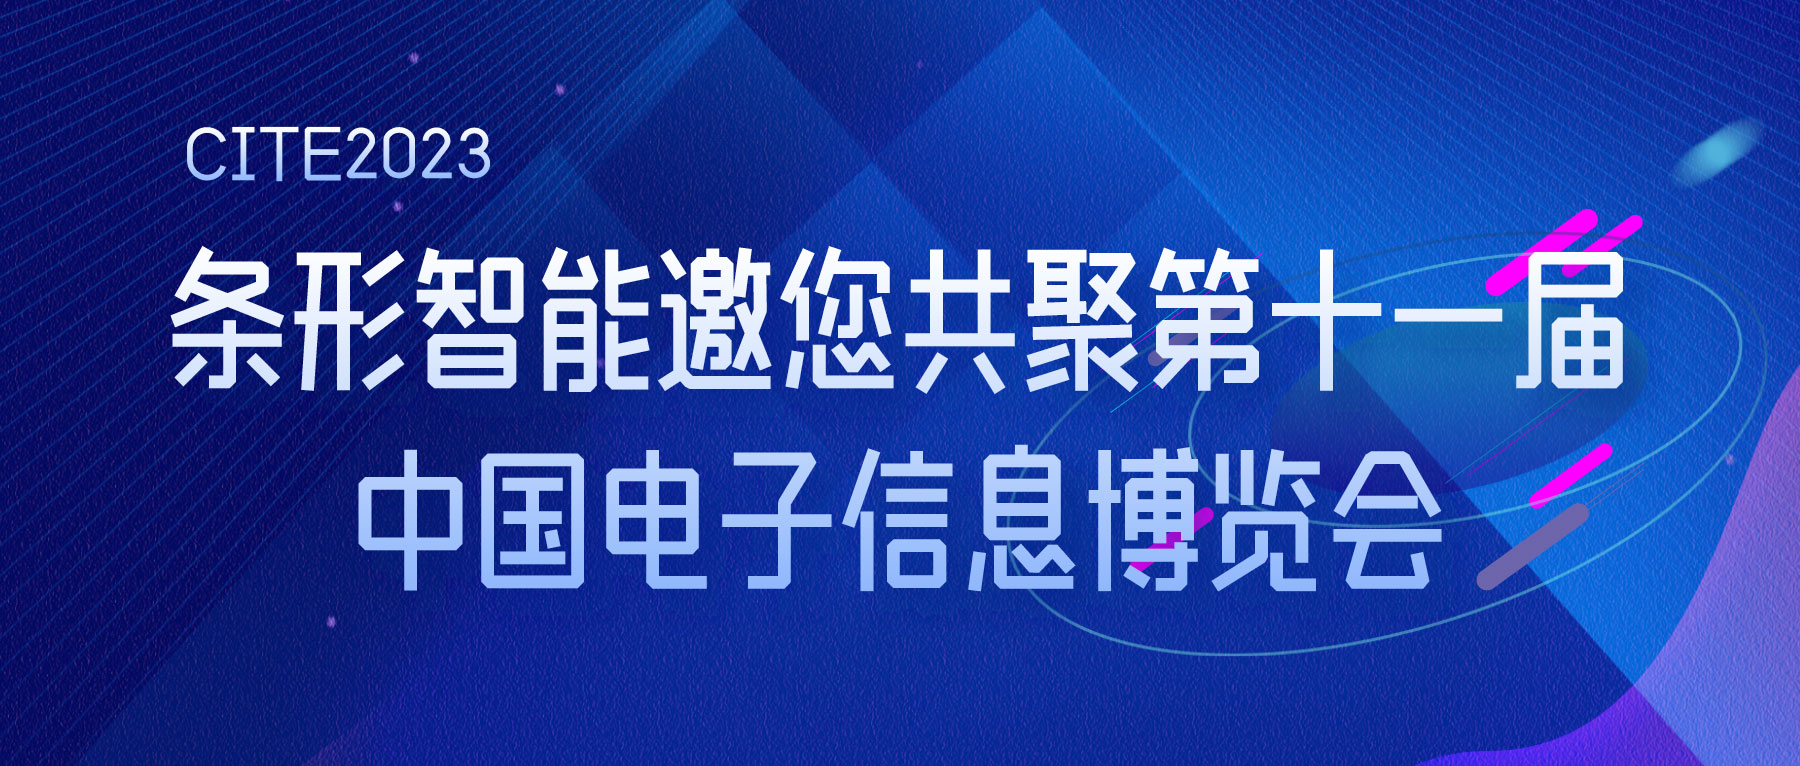 CITE2023 | bat365在线登录入口智能邀您共聚第十一届中国电子信息博览会